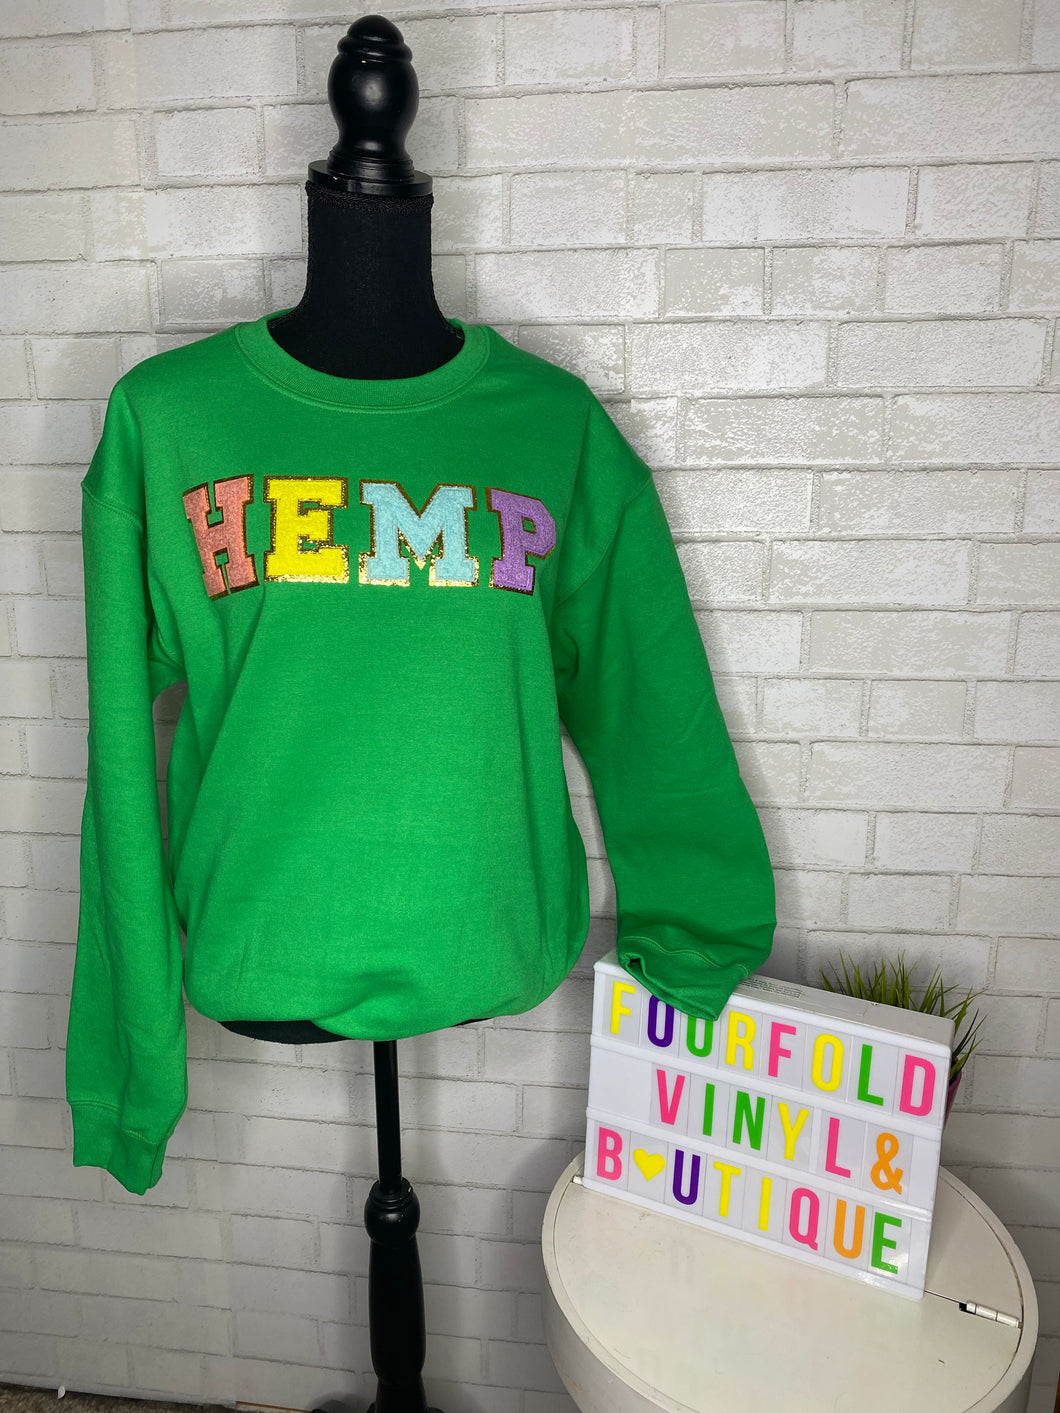 HEMP crewneck sweatshirt (please read description)